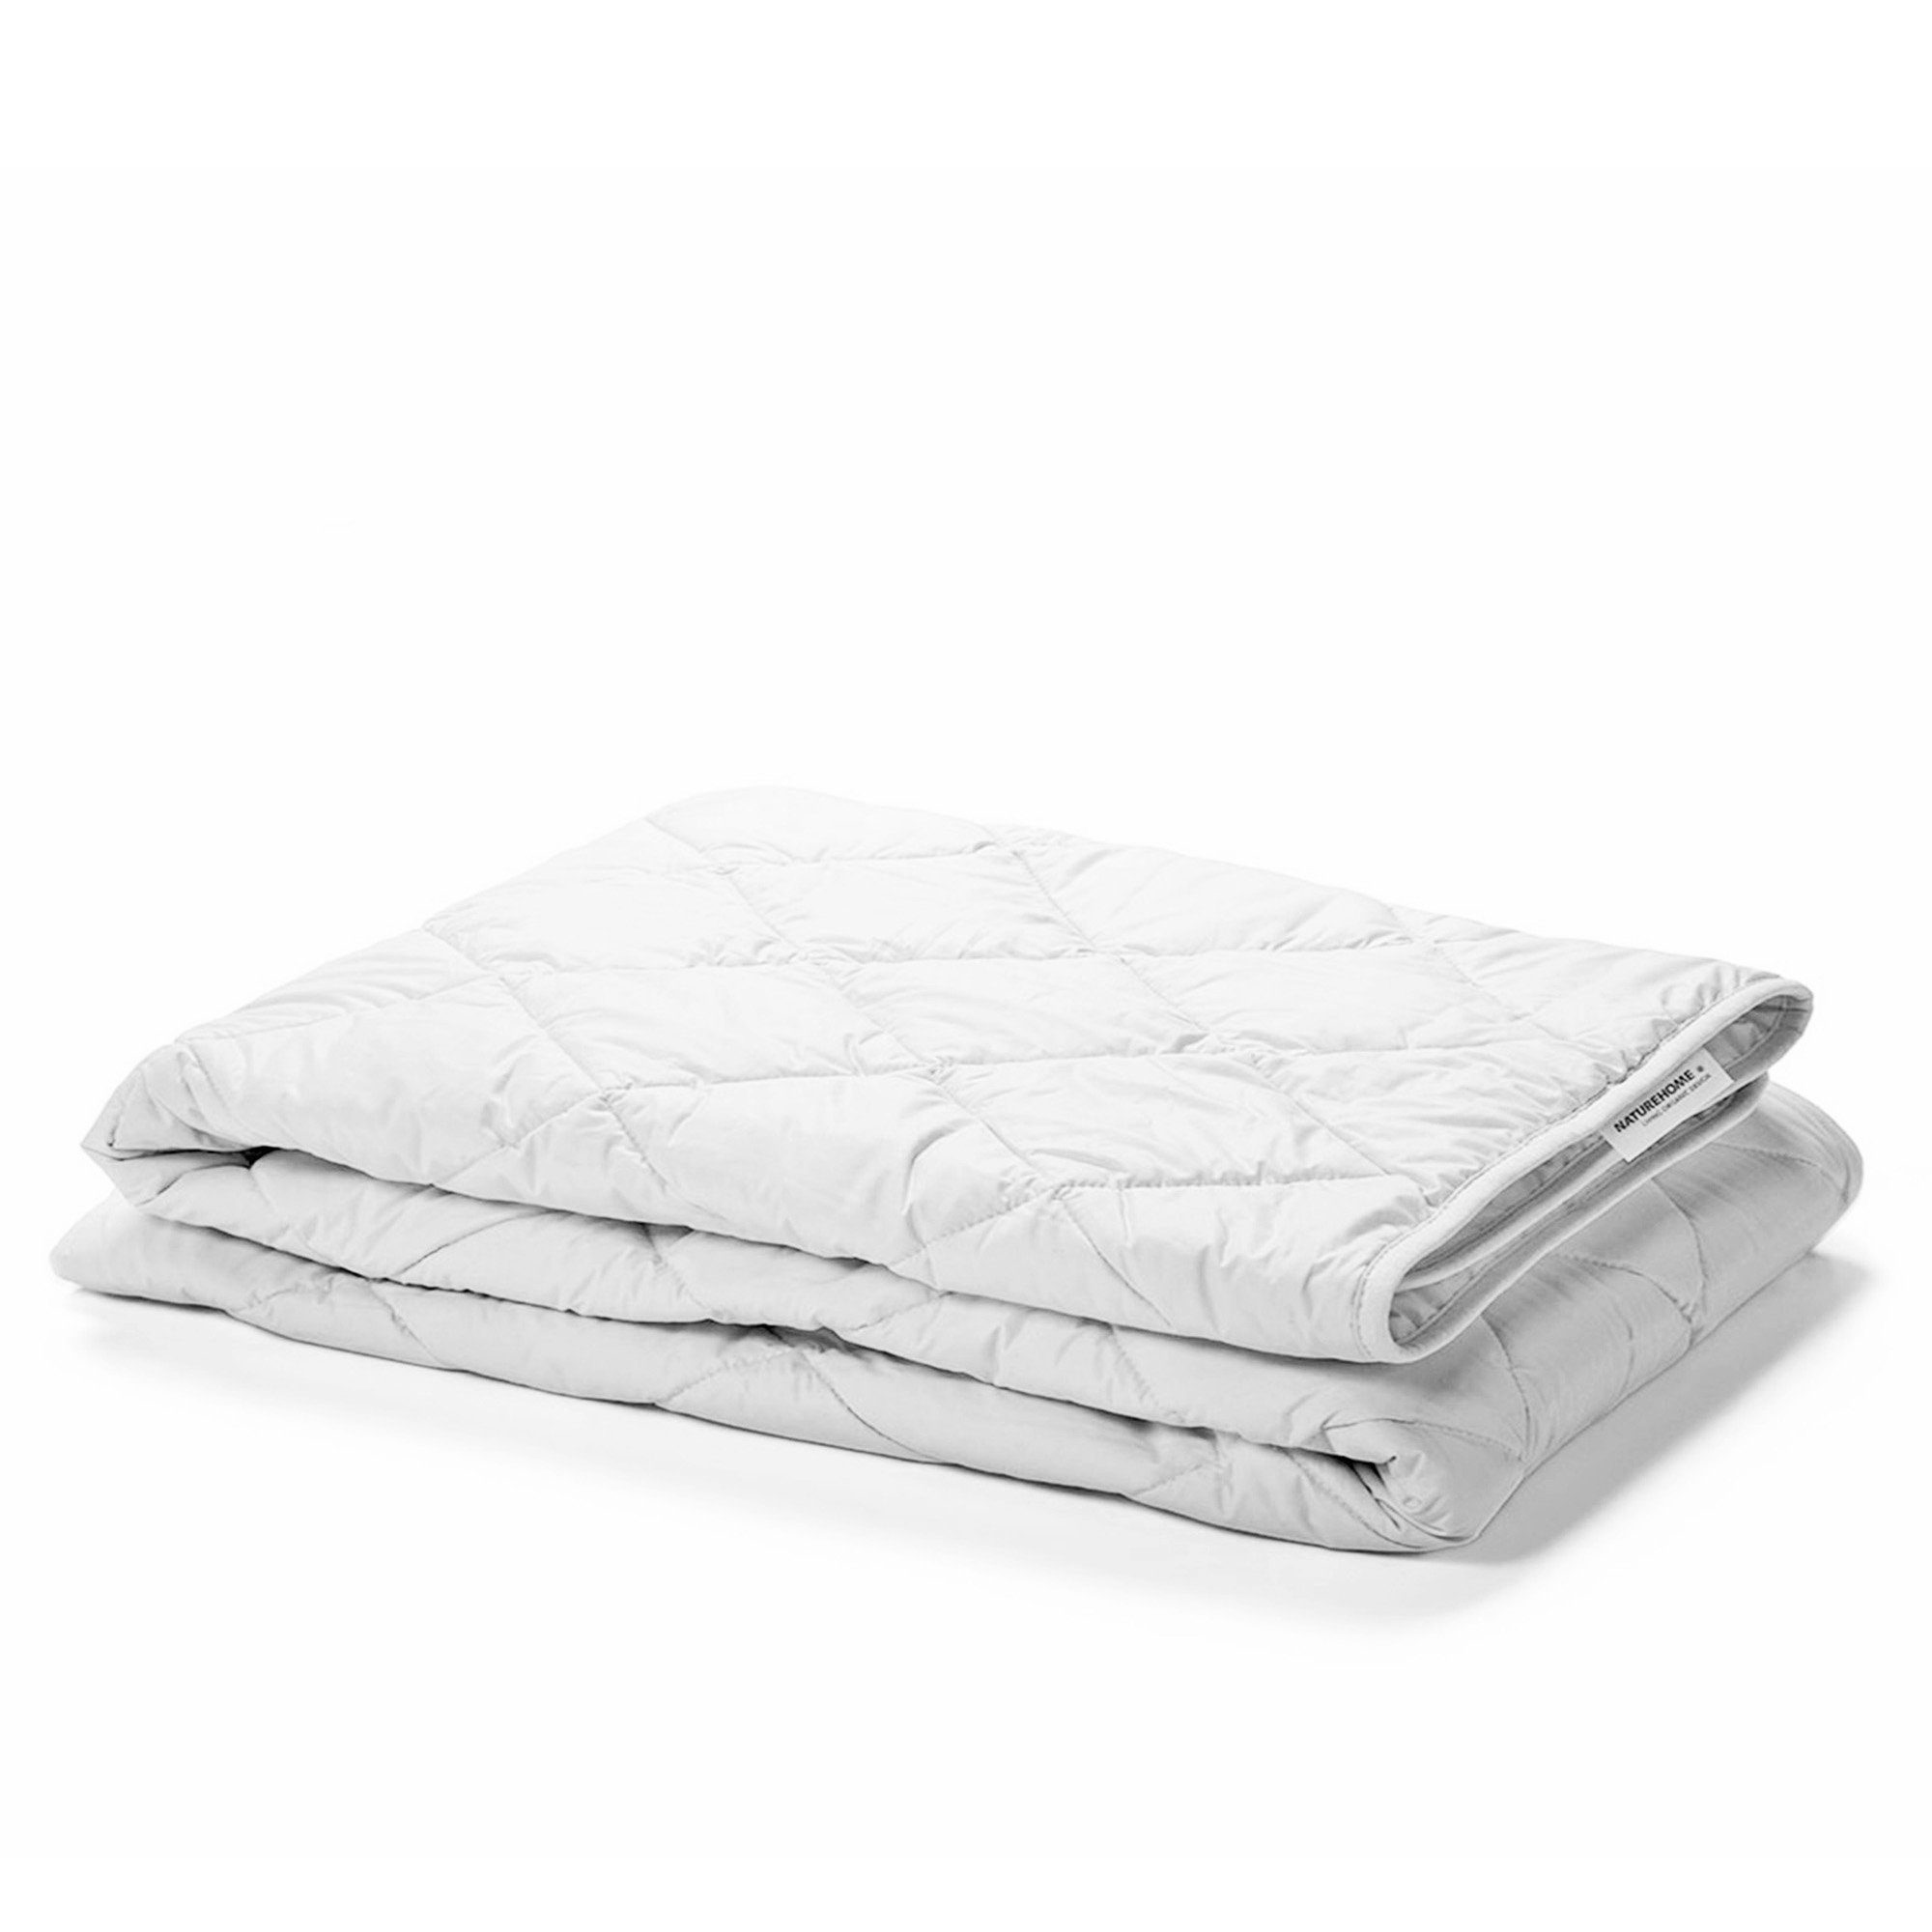 Tagesdecke Sommer-Bettdecke aus 100% Baumwolle, 135x200cm, NATUREHOME